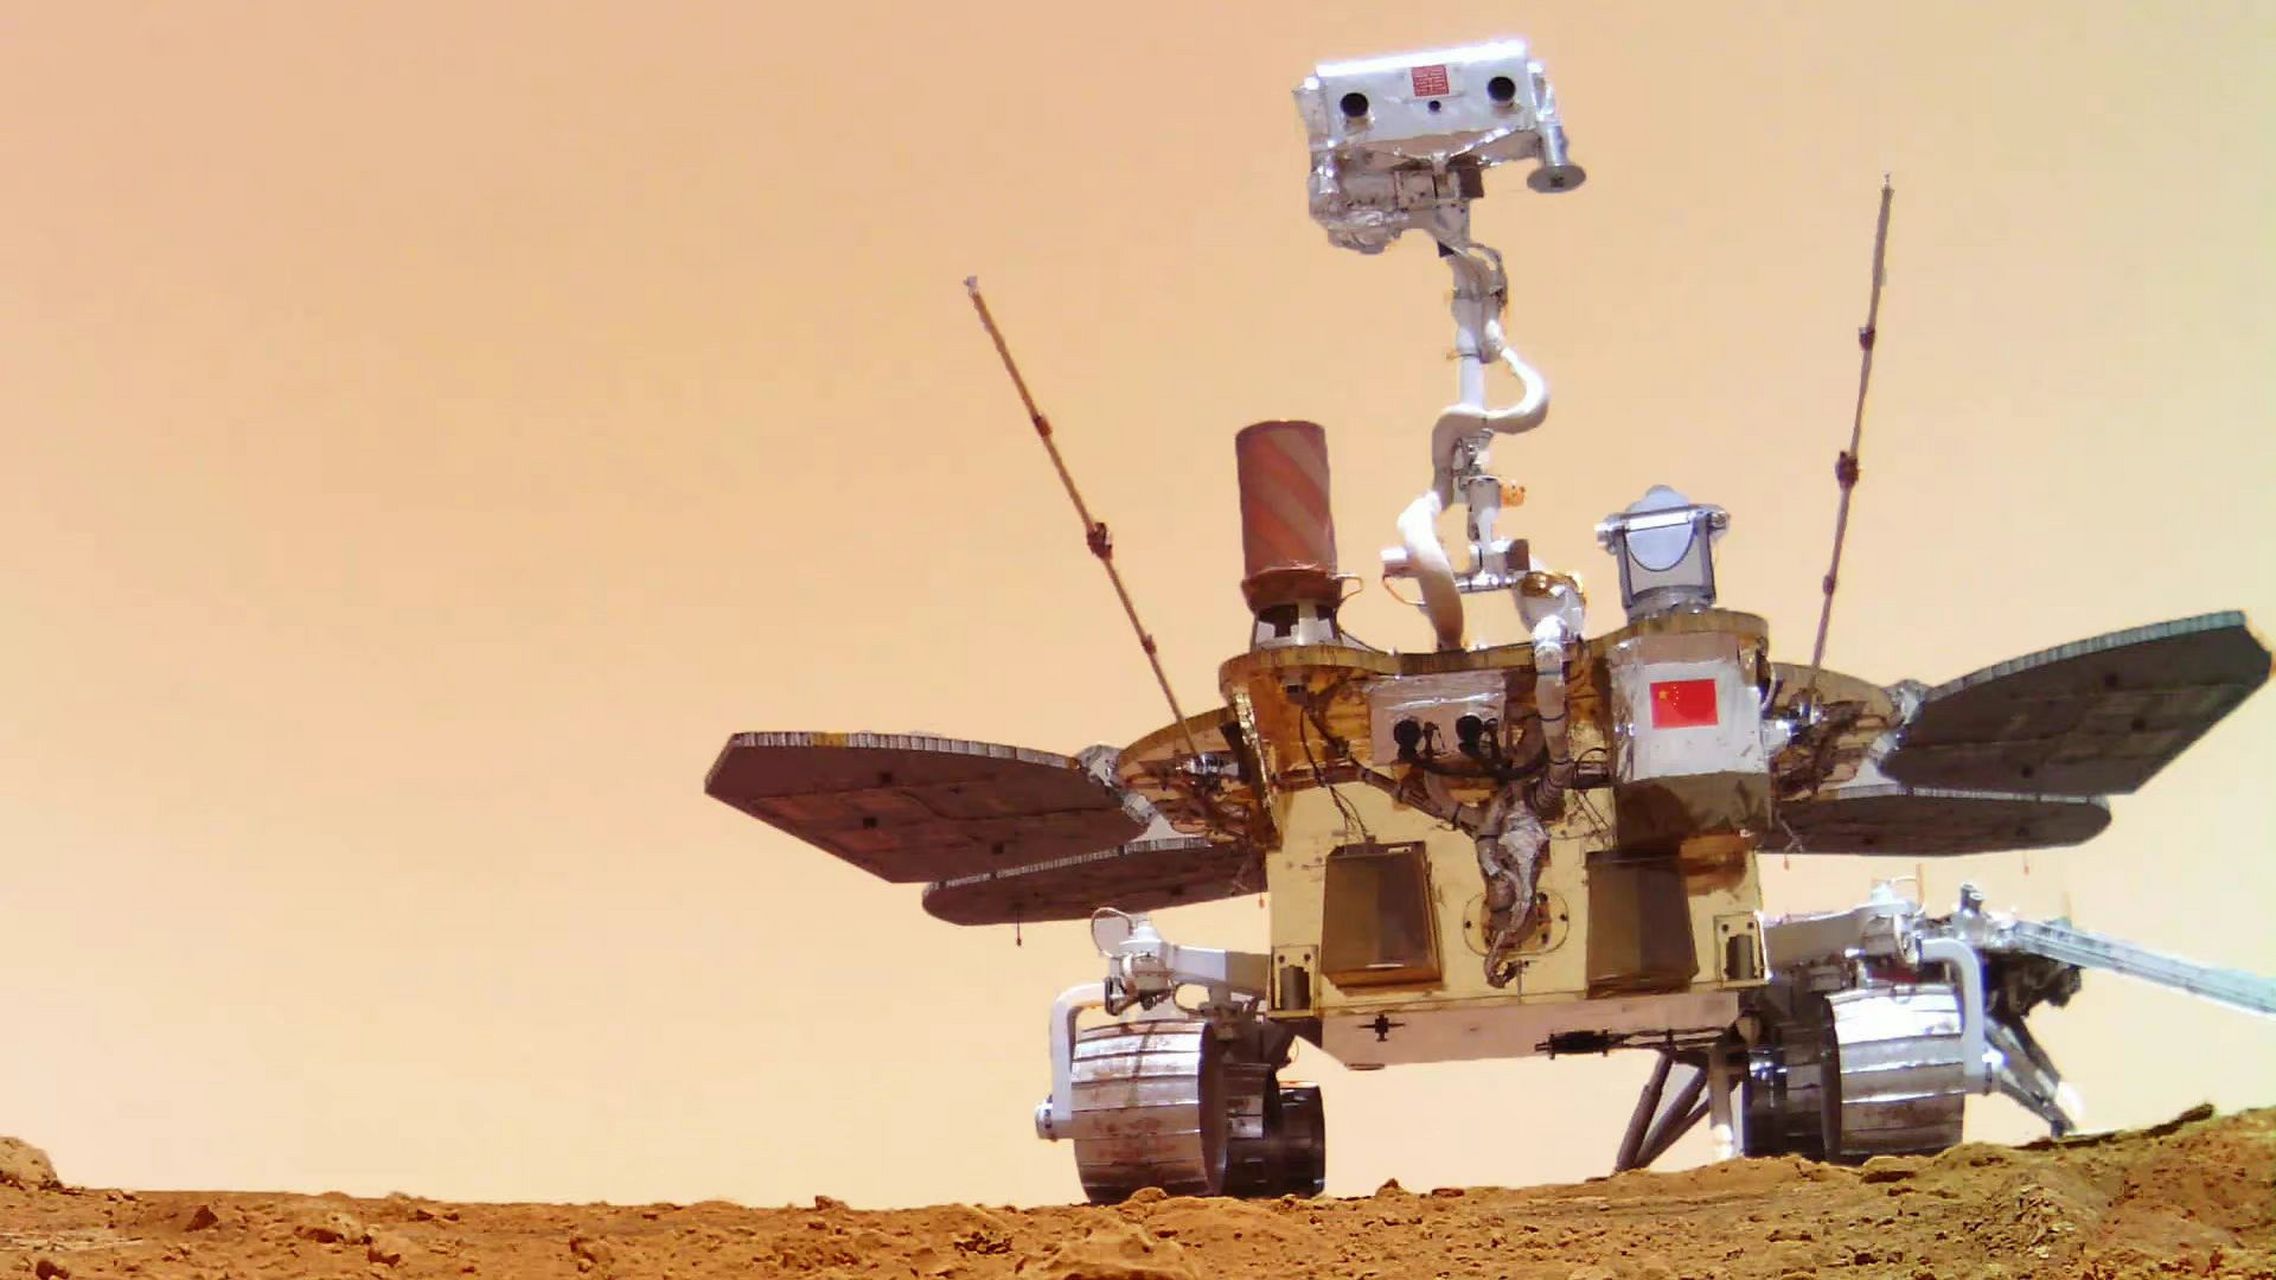 2021年5月15日,祝融号火星车成功登陆火星乌托邦平原